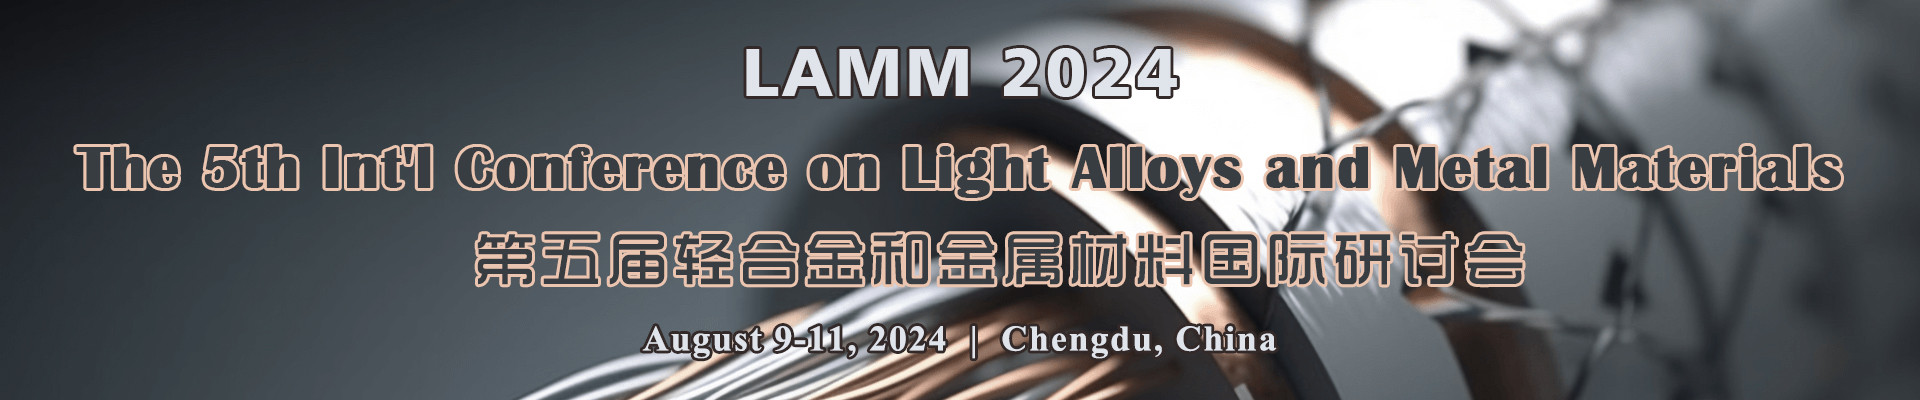 第五届轻合金和金属材料国际研讨会LAMM 2024